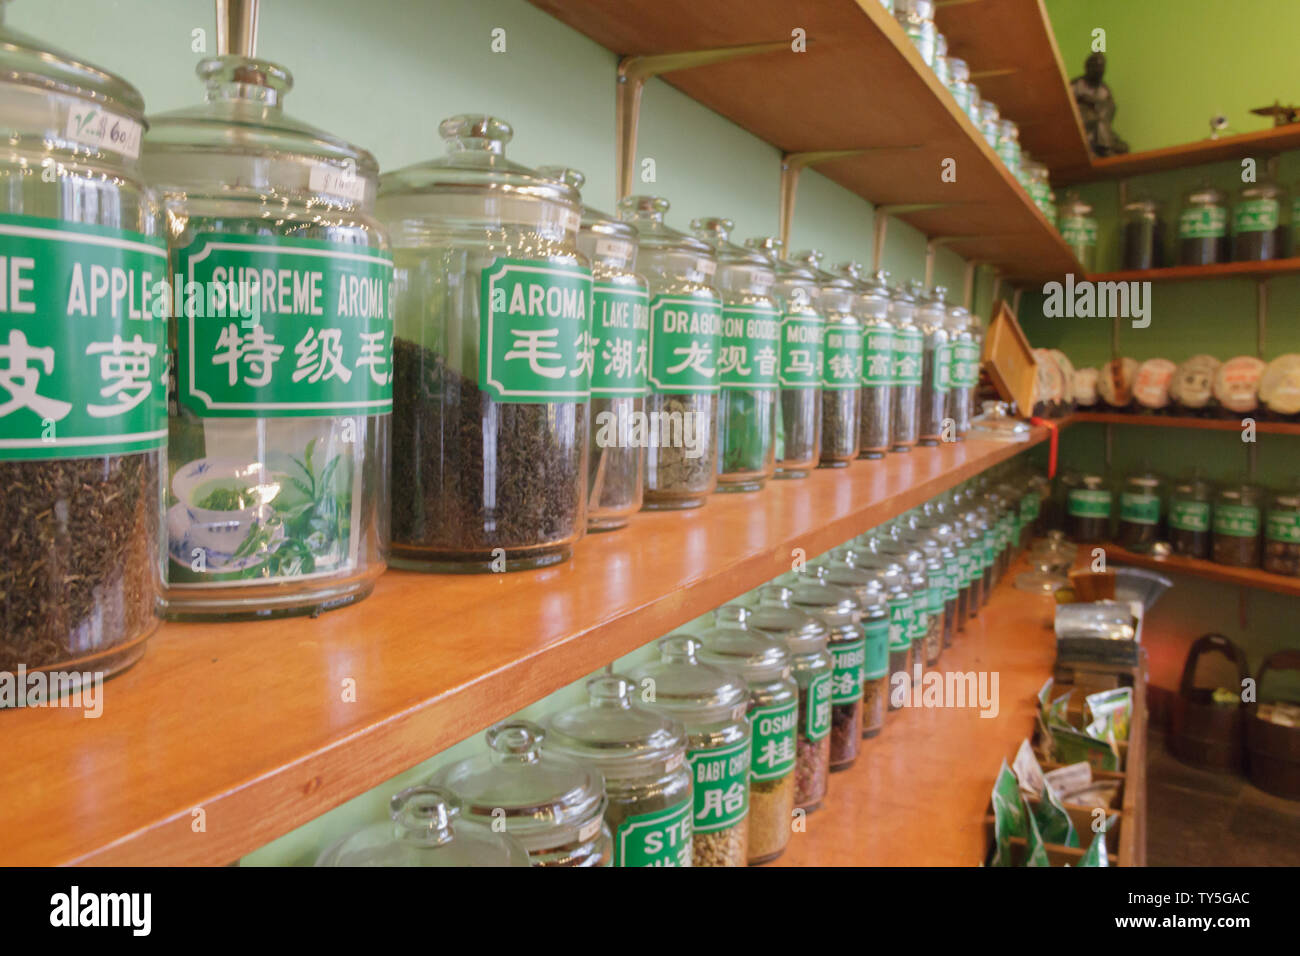 Ein Regal voller traditionelle chinesische Arzneimittel Tee in große Gläser  mit einem Label sowohl in Deutsch als auch in Englisch und Chinesisch an  der Chinesischen Tee Shop geschrieben Stockfotografie - Alamy